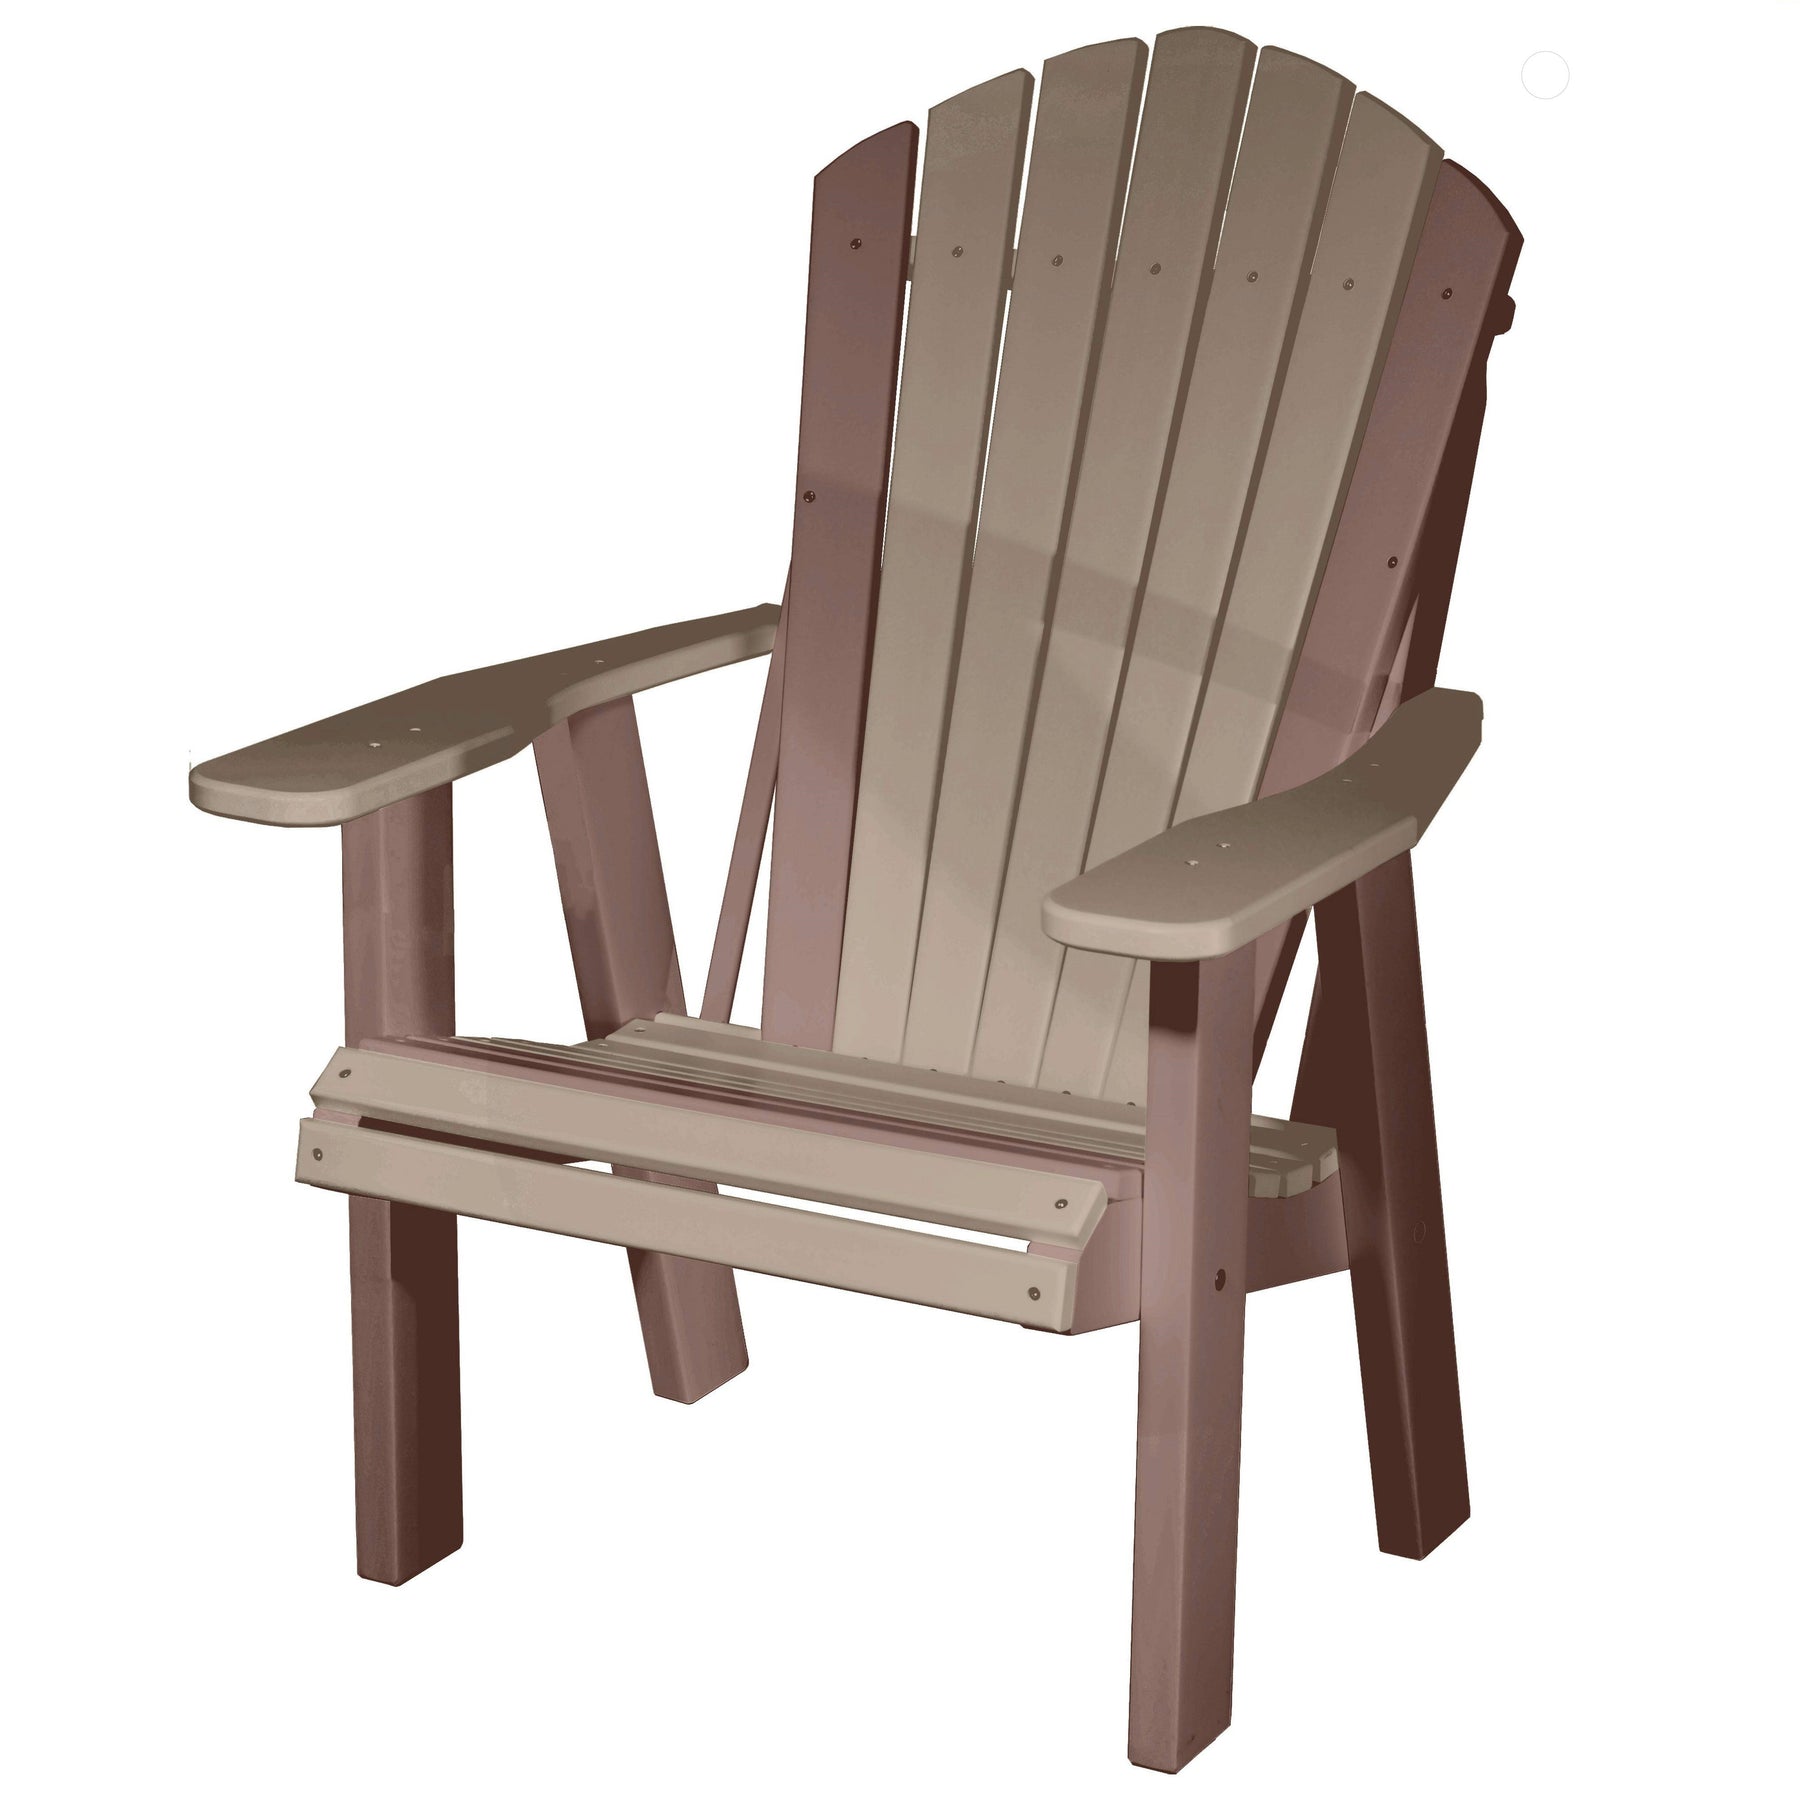 Qw Amish Adirondack Chair 39263758156014 ?v=1689314273&width=1800